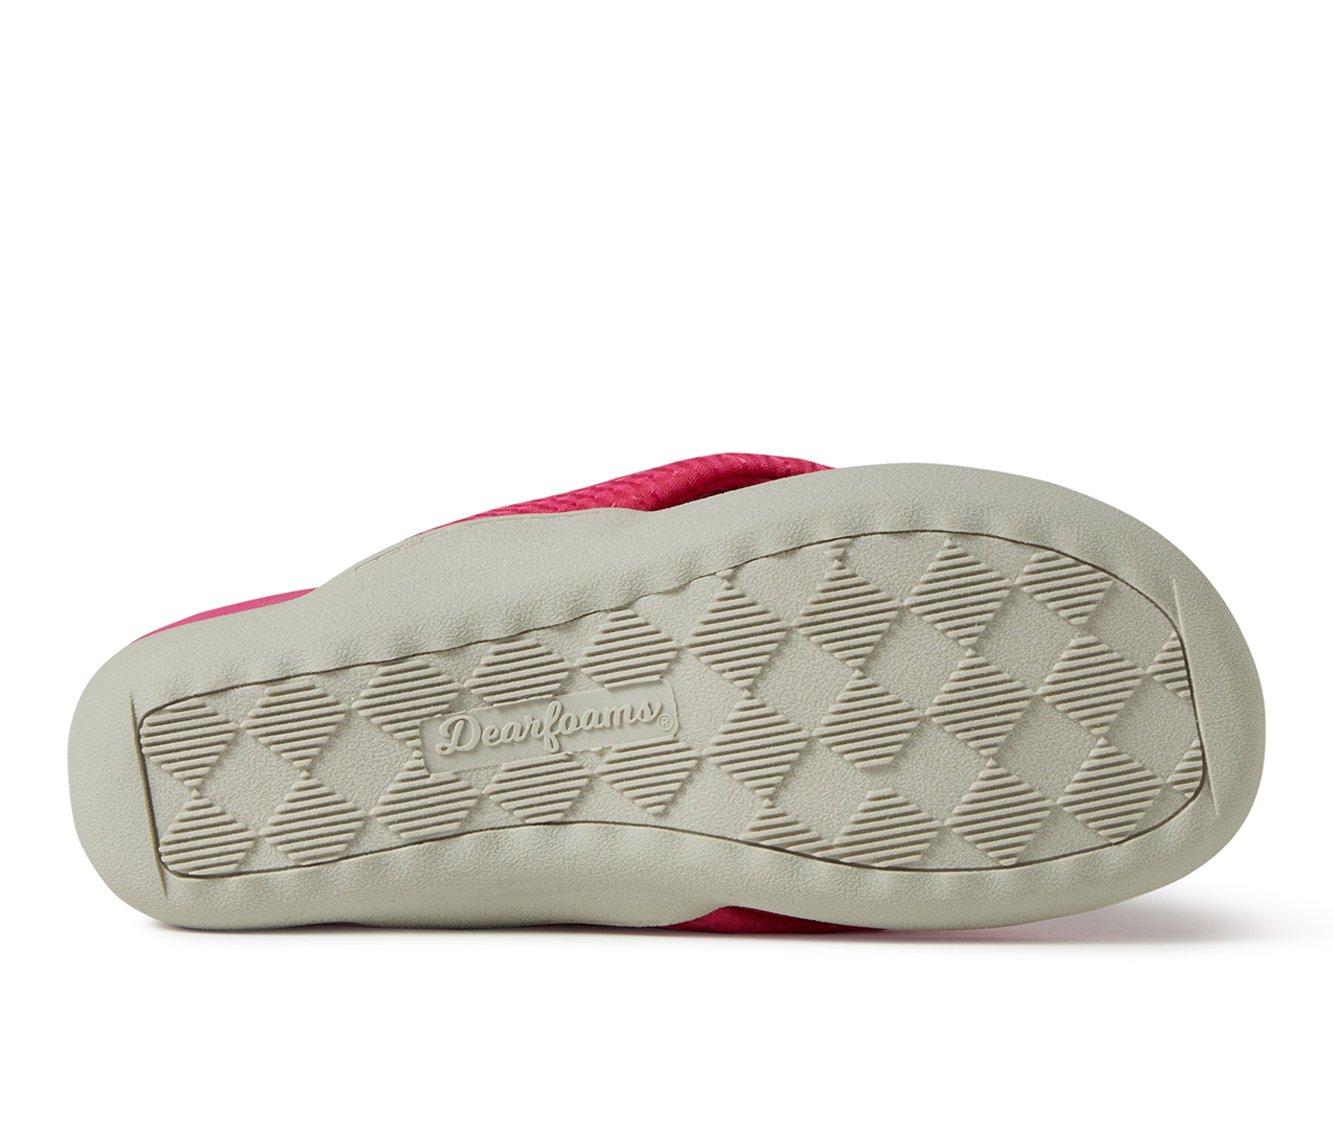 Women's Dearfoams OriginalComfort Low Foam Slide Thong Slipper